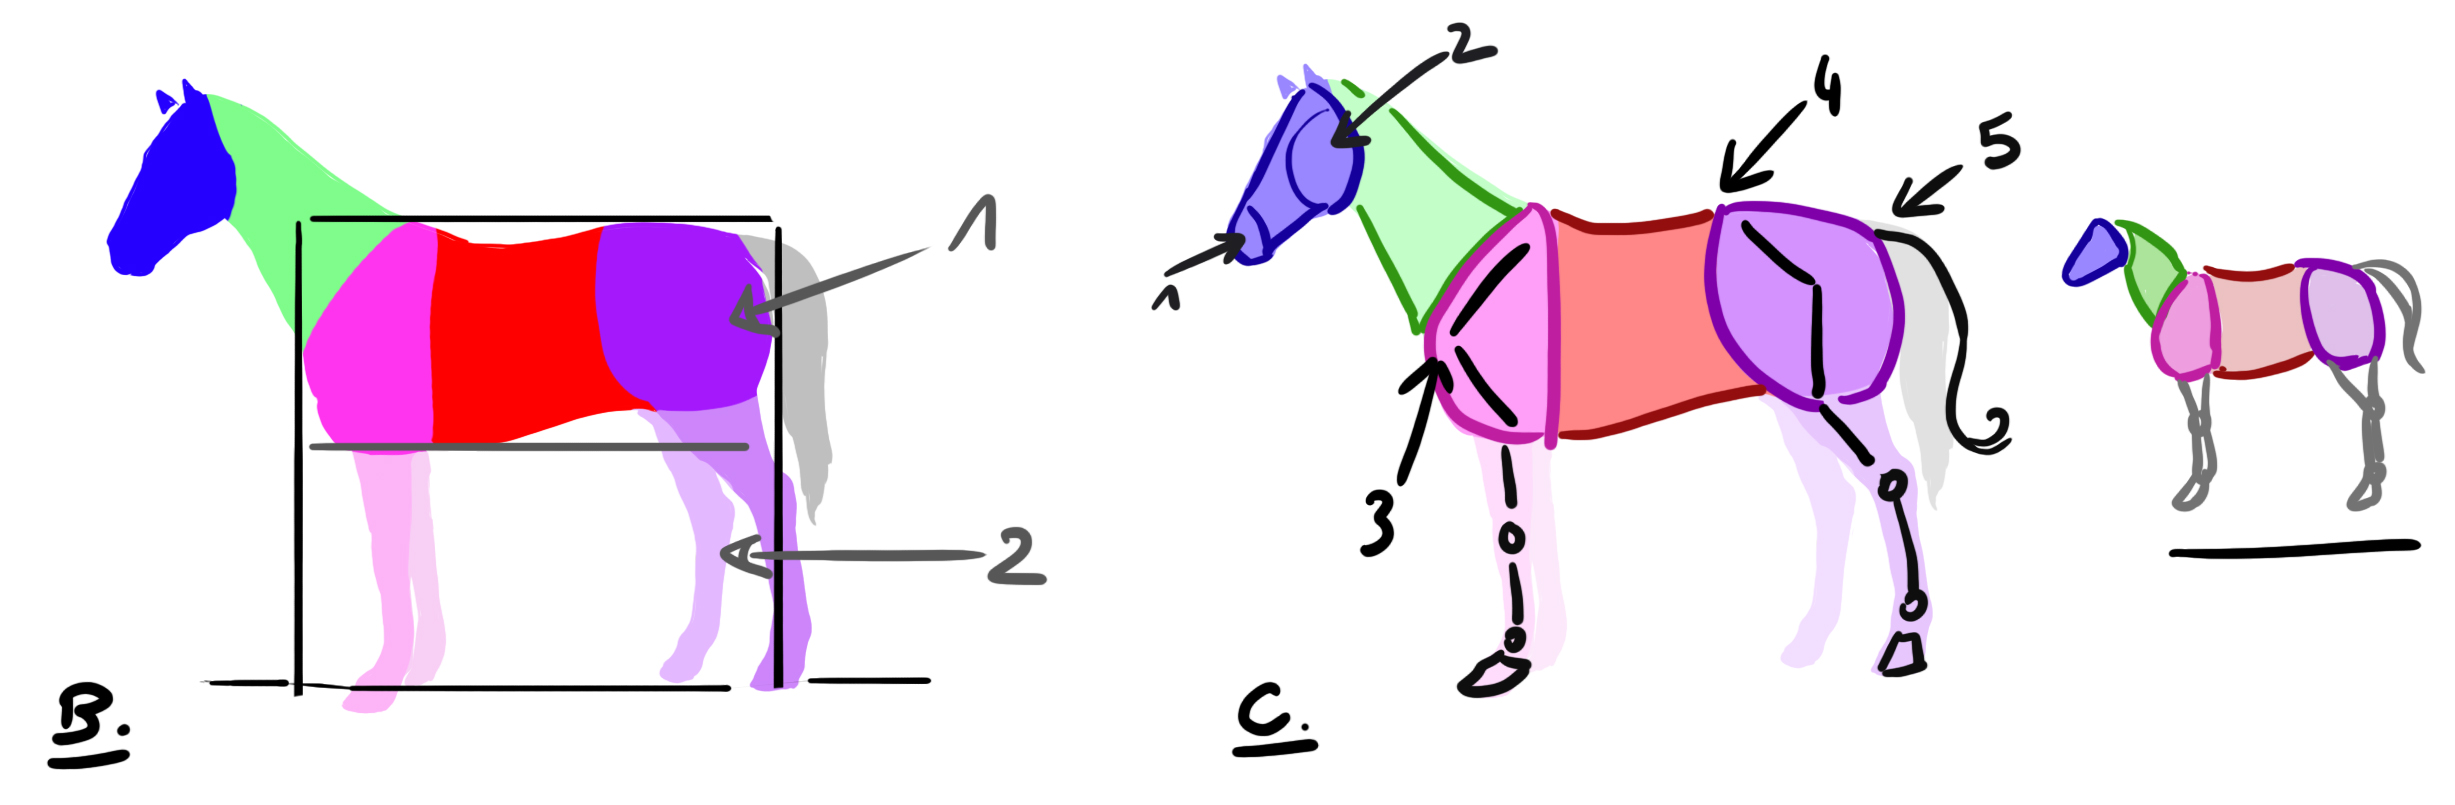 schéma explicatif de la morphologie du cheval en vue du dessin de licorne 2